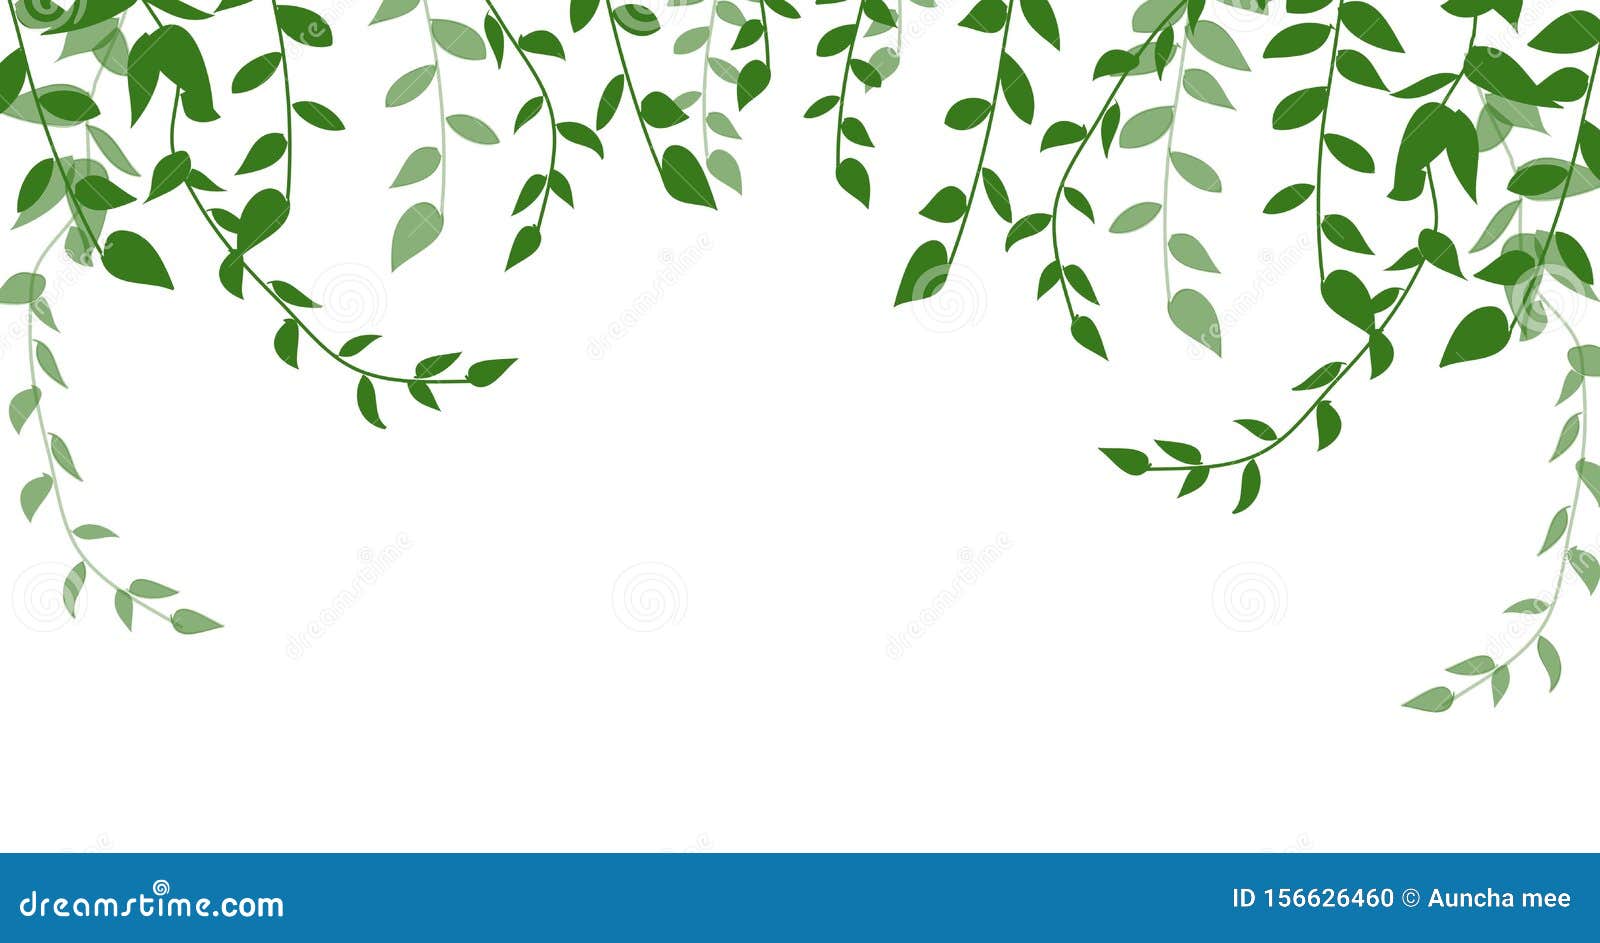 Green Leaves Isolated on White Background. Illustration Design Stock Photo  - Image of botany, flora: 156626460